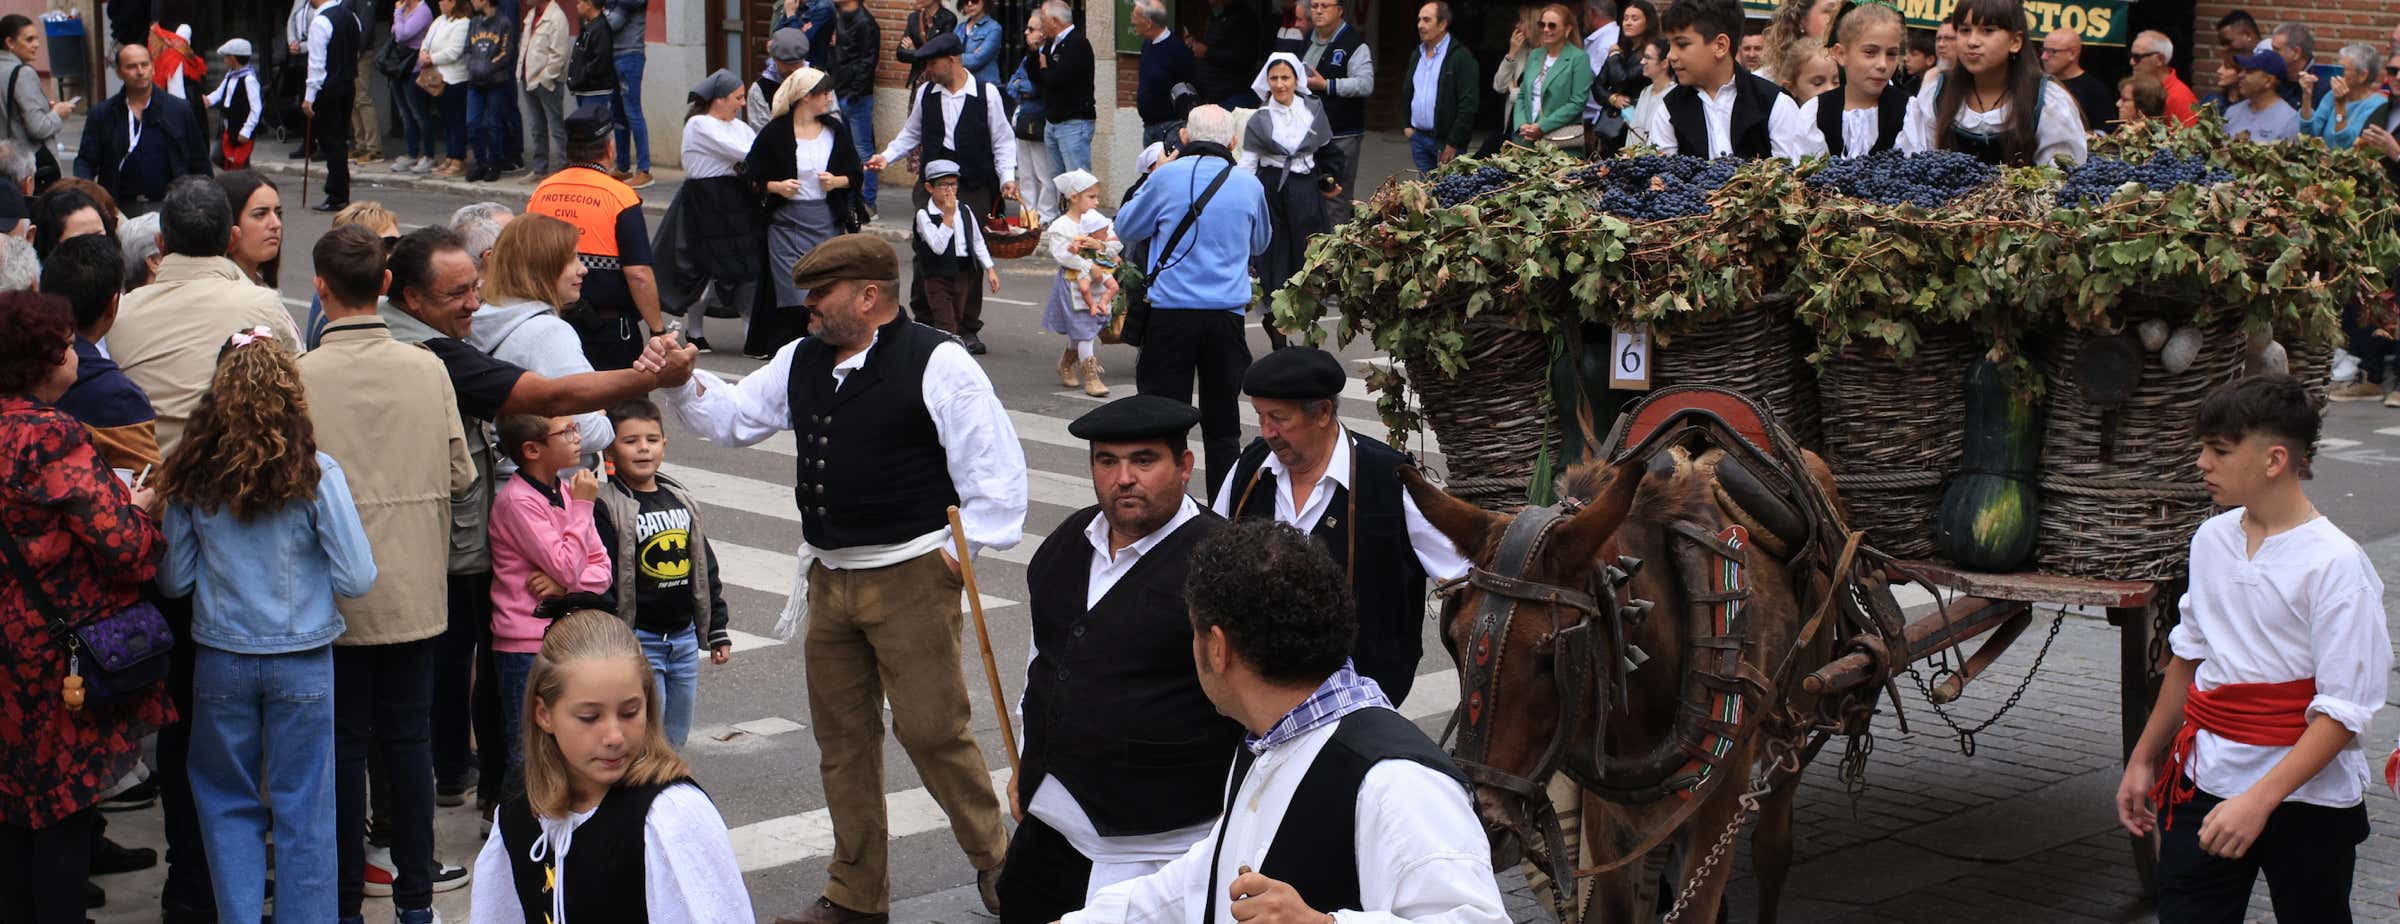 Das Bild zeigt viele feiernde Menschen während des Weinfestes und der Parade in Toro. Ein traditioneller Holzkarren, gefüllt mit Trauben und Kürbissen, wird von einem Esel gezogen.